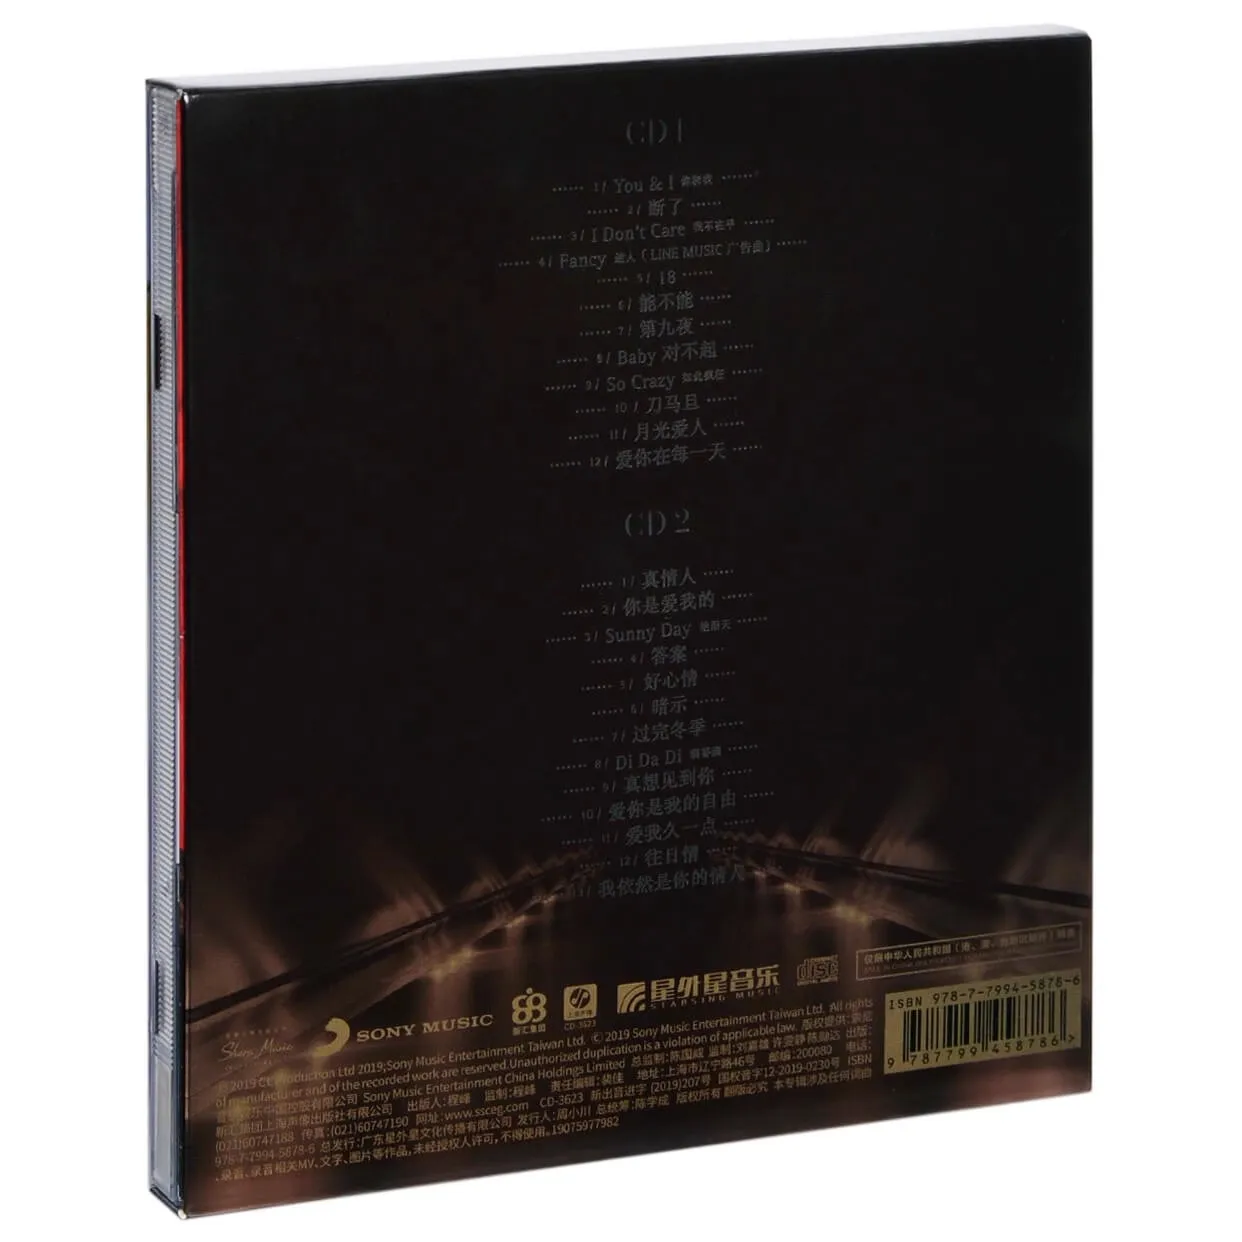 Азия Китайский Официальный Оригинальный Бокс-сет на 2 CD-диска Поп-музыки Китайской певицы Ли Вэнь Коко Ли с альбомом из 25 песен в 2019 году